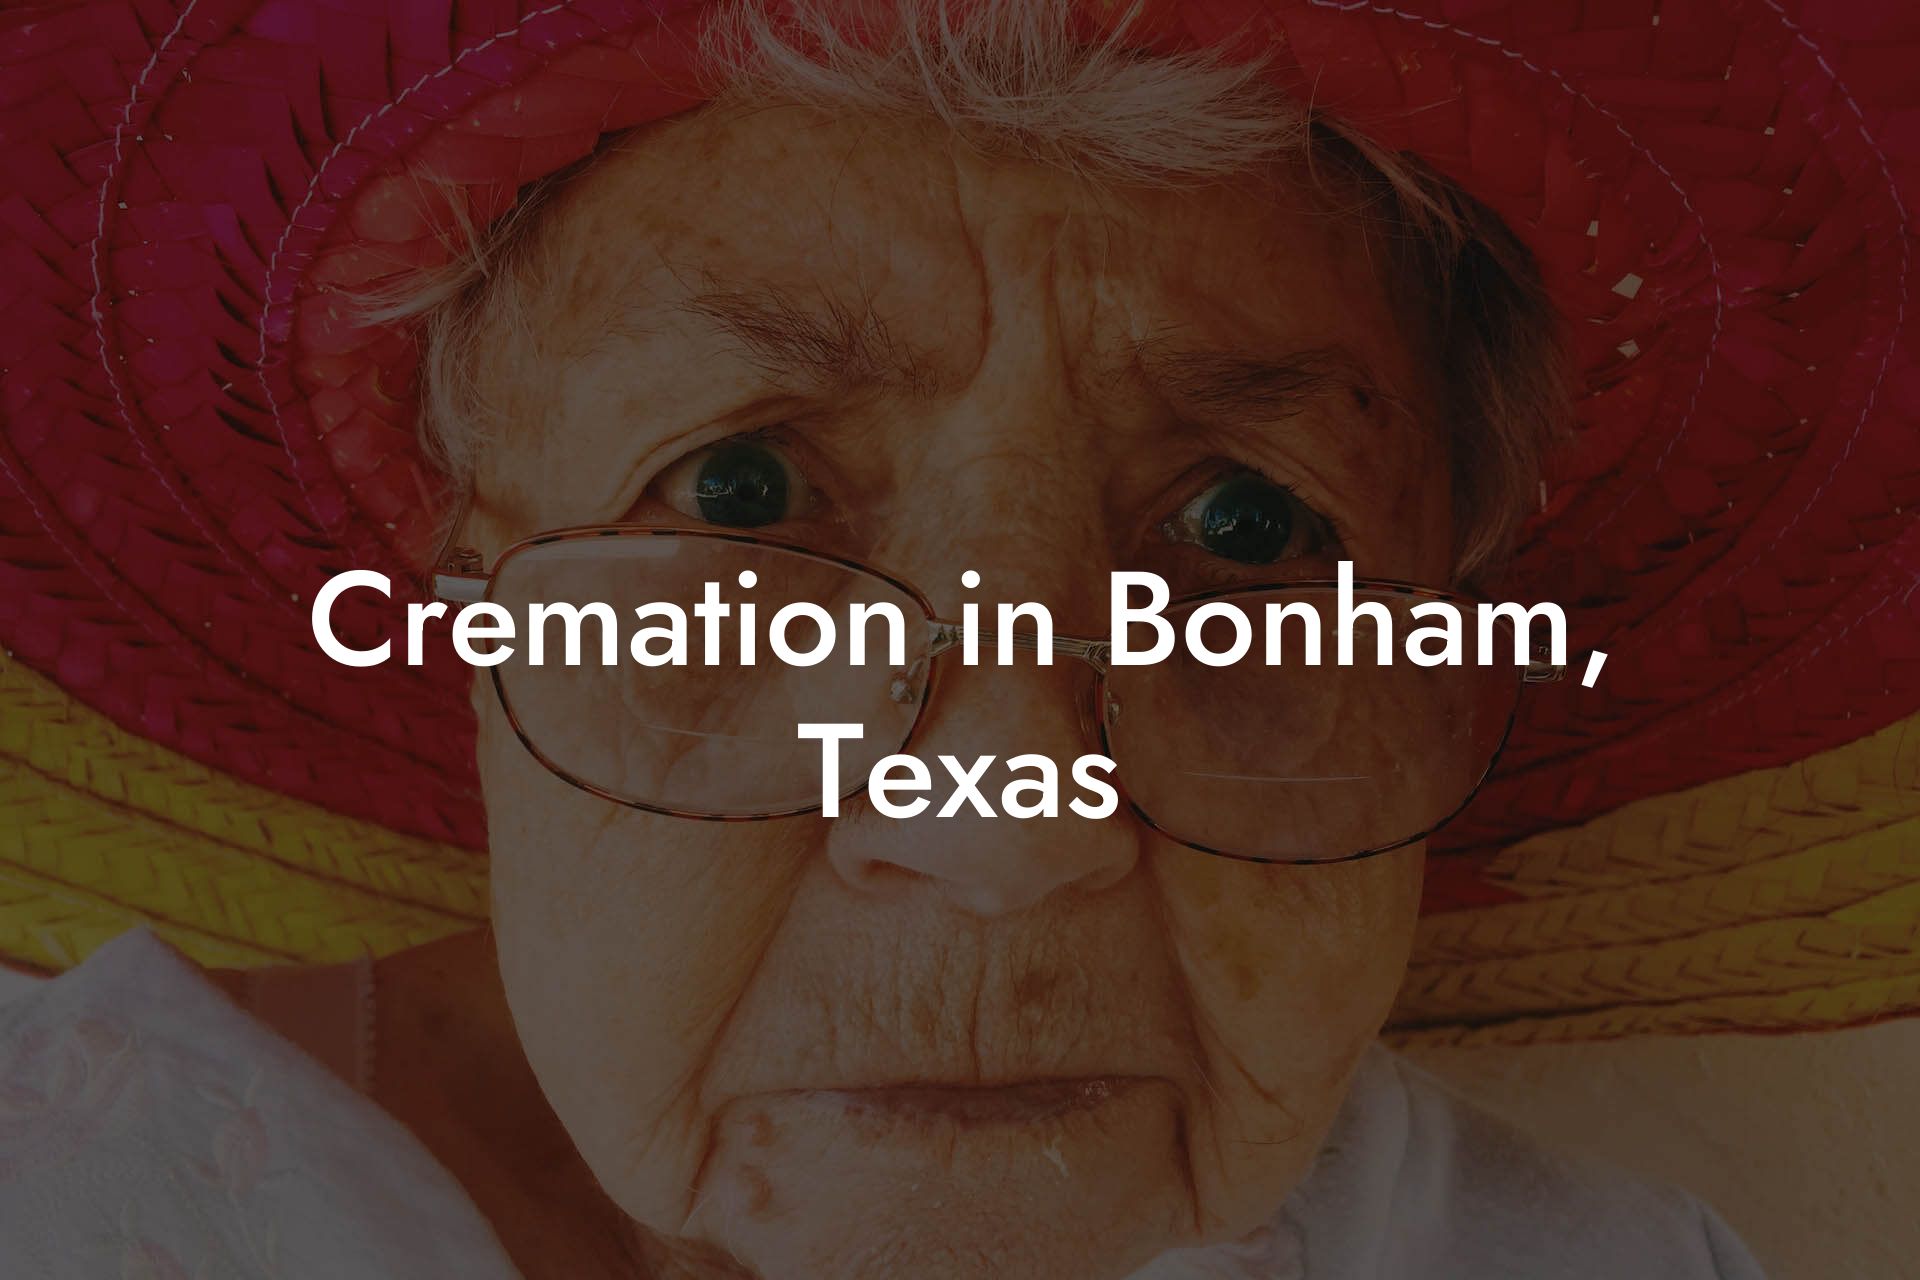 Cremation in Bonham, Texas